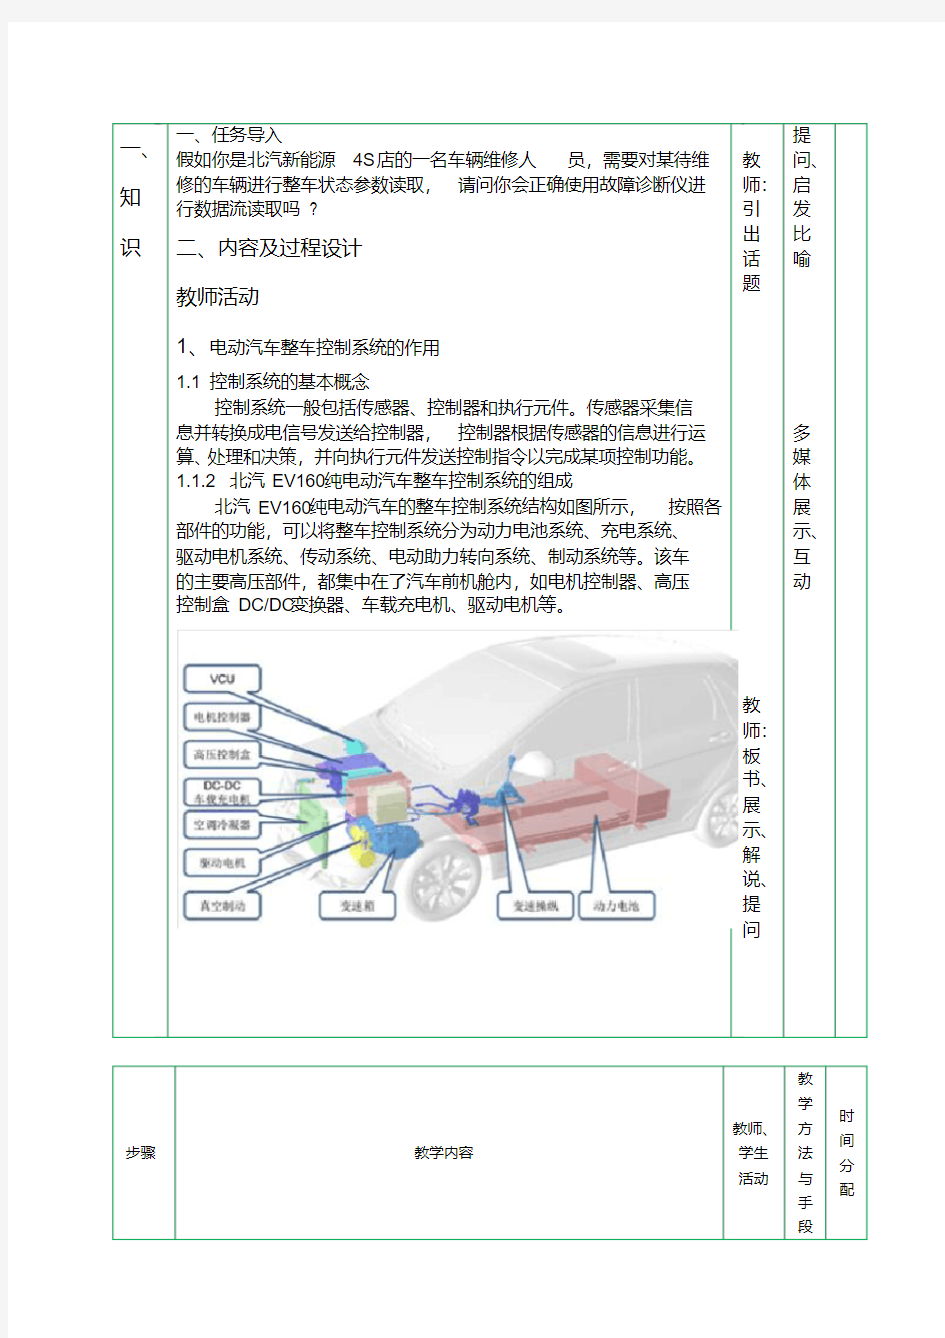 新版纯电动汽车整车控制系统教案-新版-精选.pdf